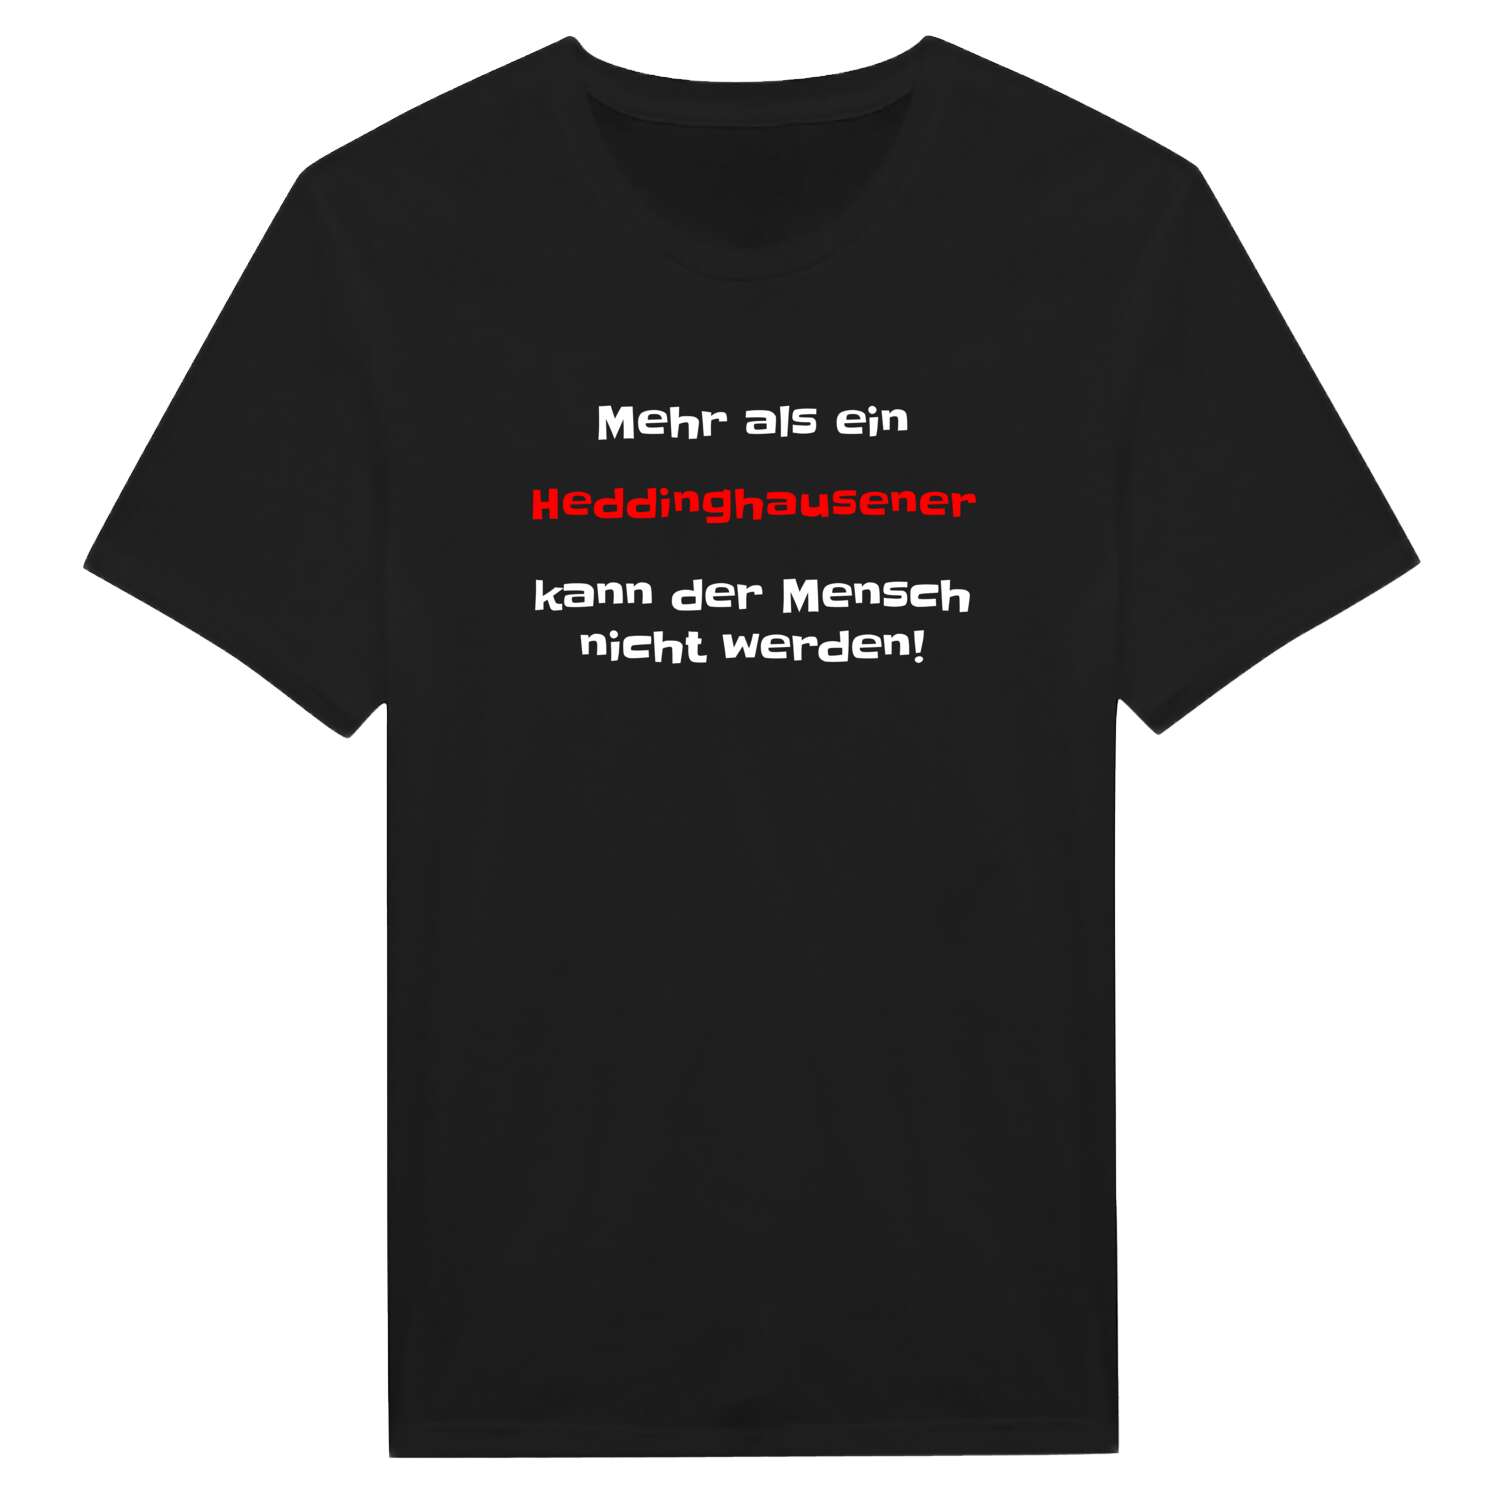 Heddinghausen T-Shirt »Mehr als ein«